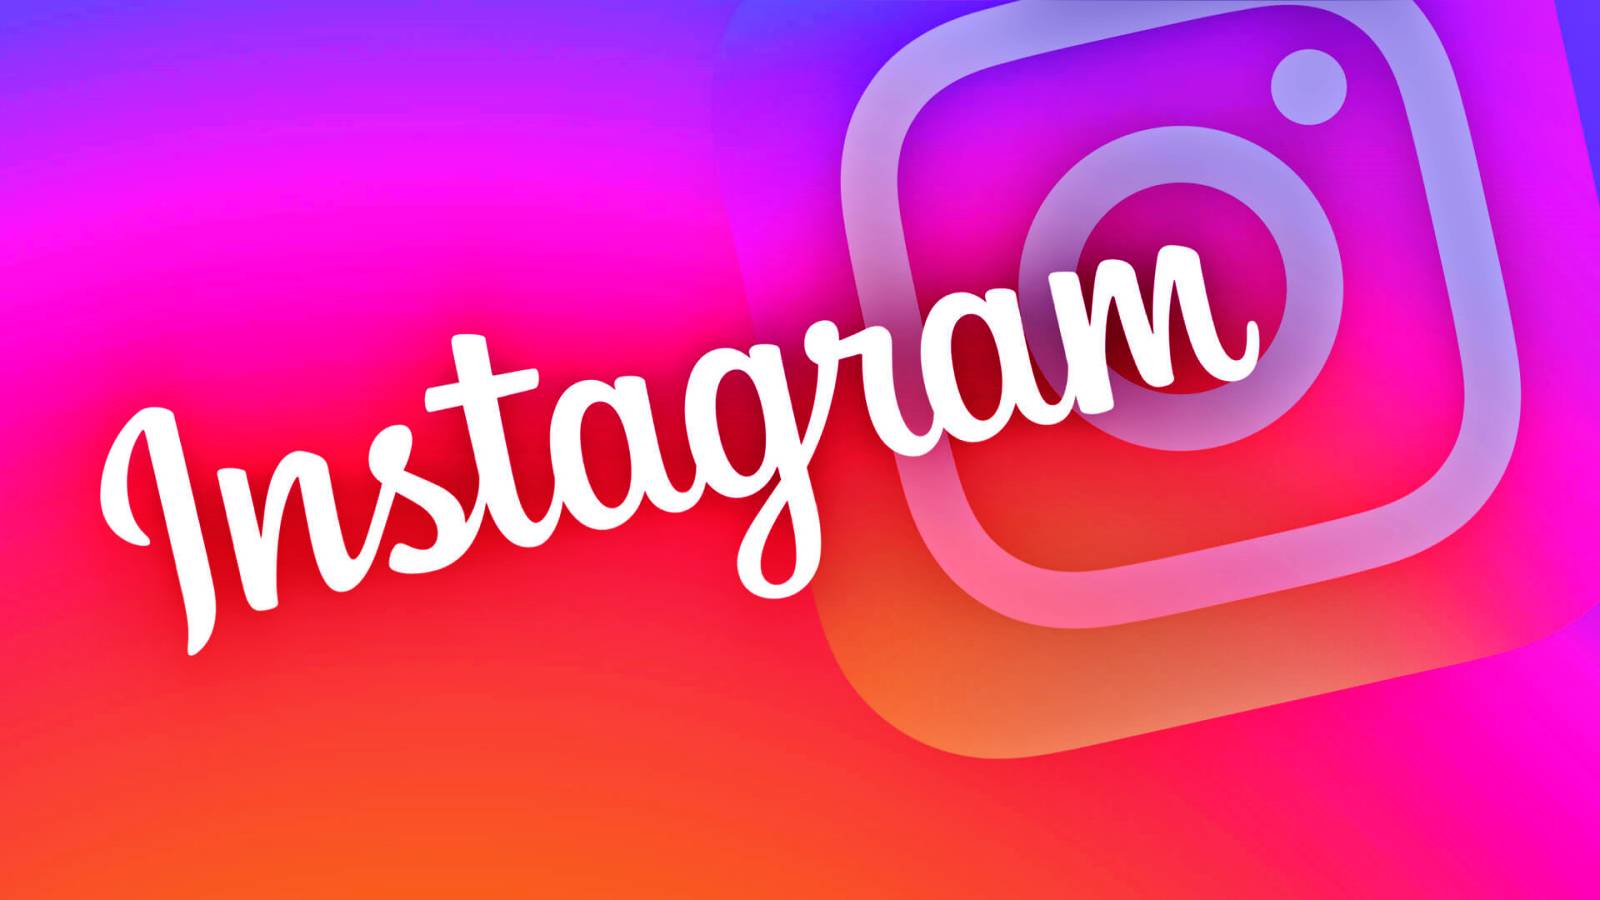 Nieuwe Instagram-update uitgebracht en de veranderingen die deze met zich meebrengt